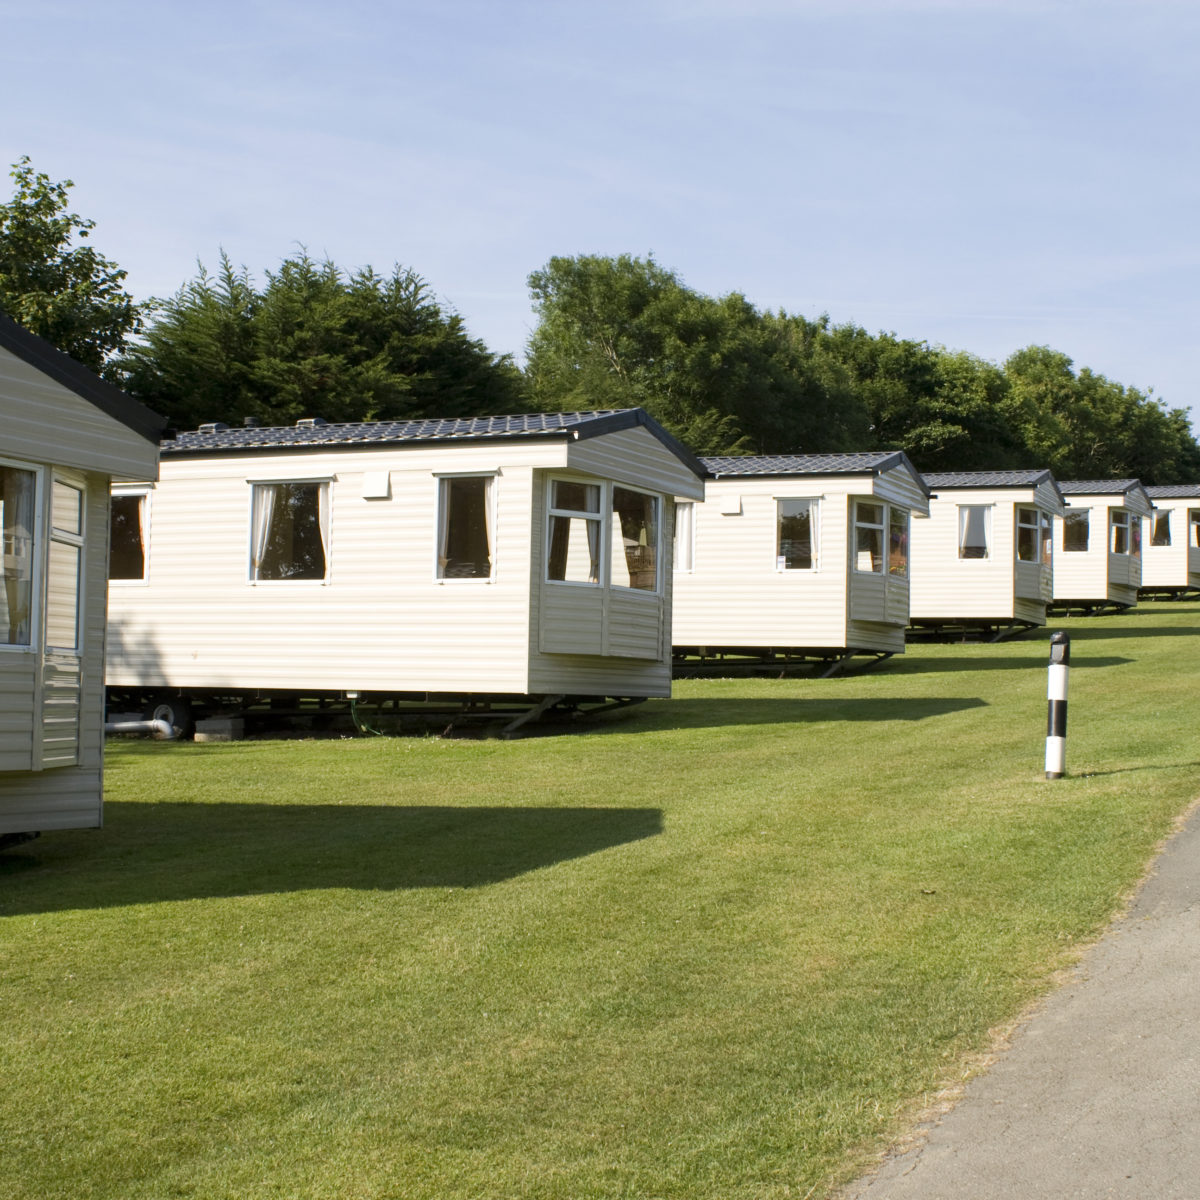 Static caravans in camping site